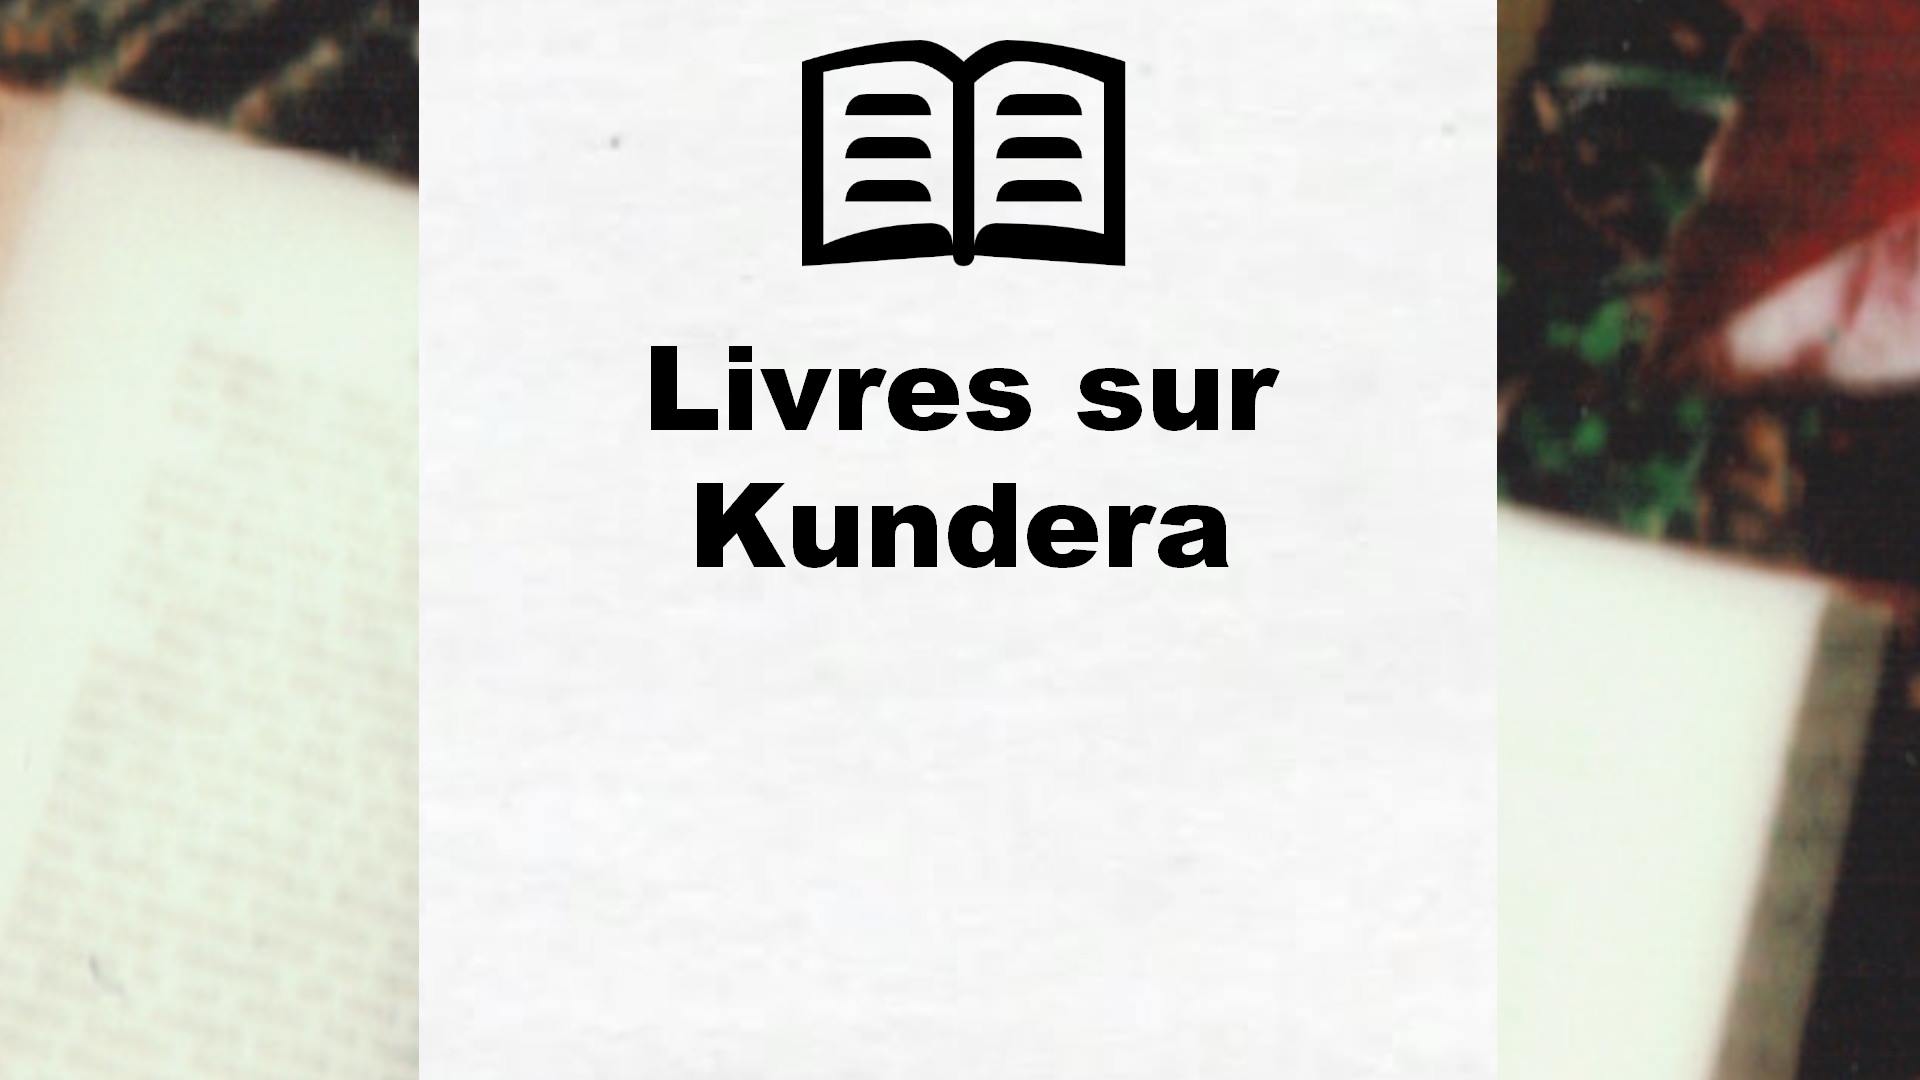 Livres sur Kundera